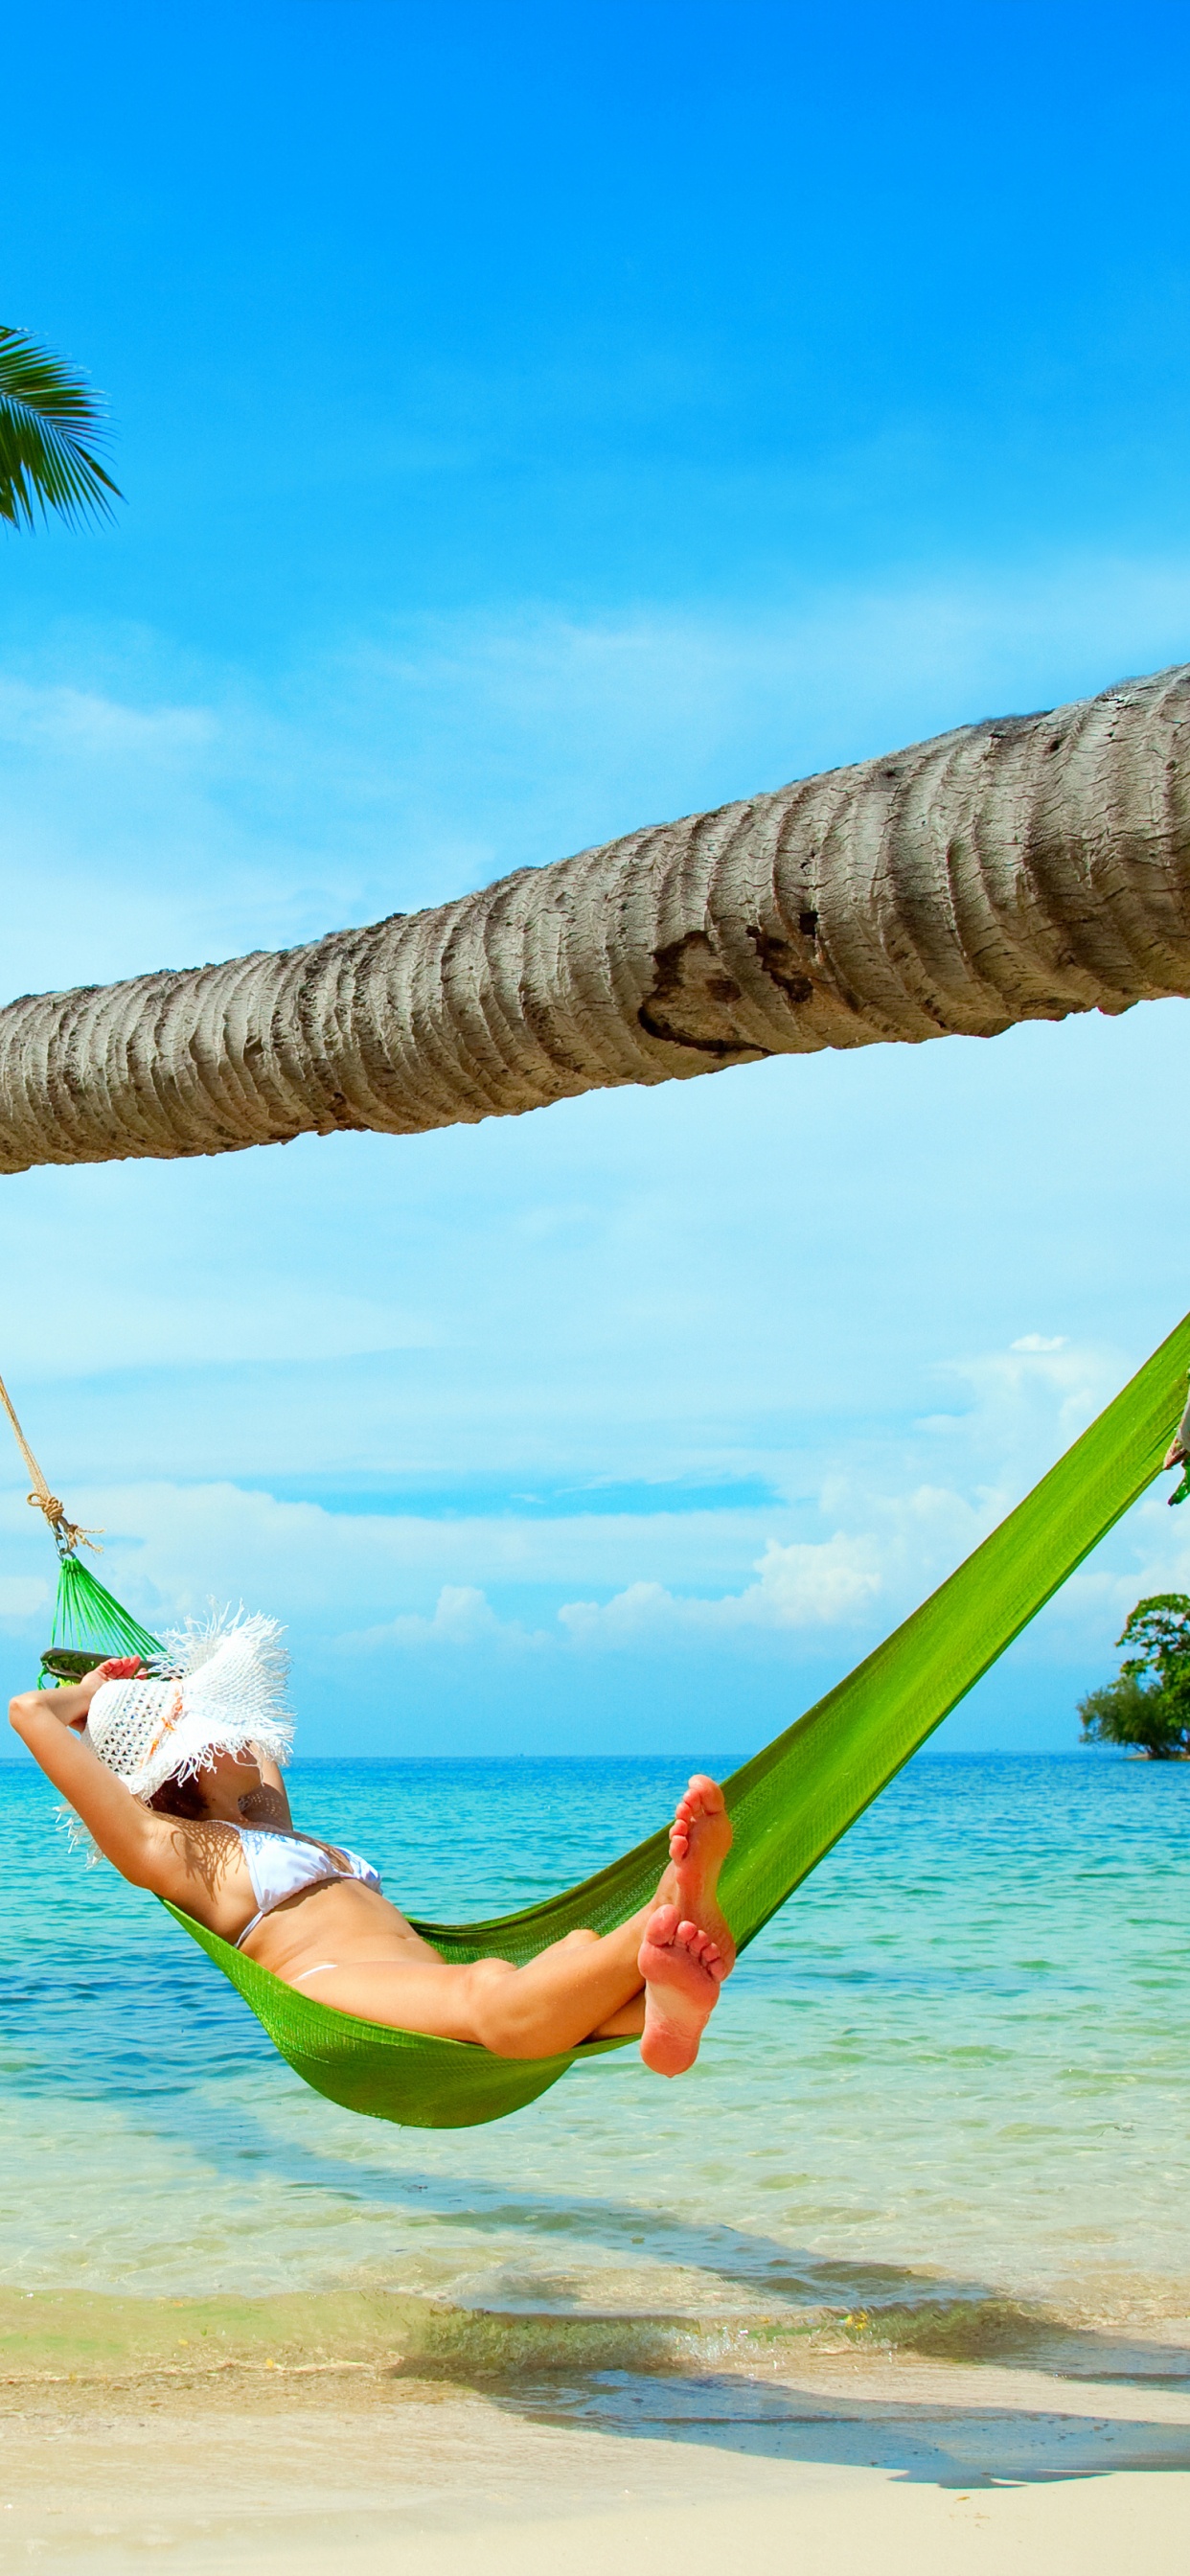 吊床, 大海, 热带地区, 度假, 加勒比 壁纸 1242x2688 允许